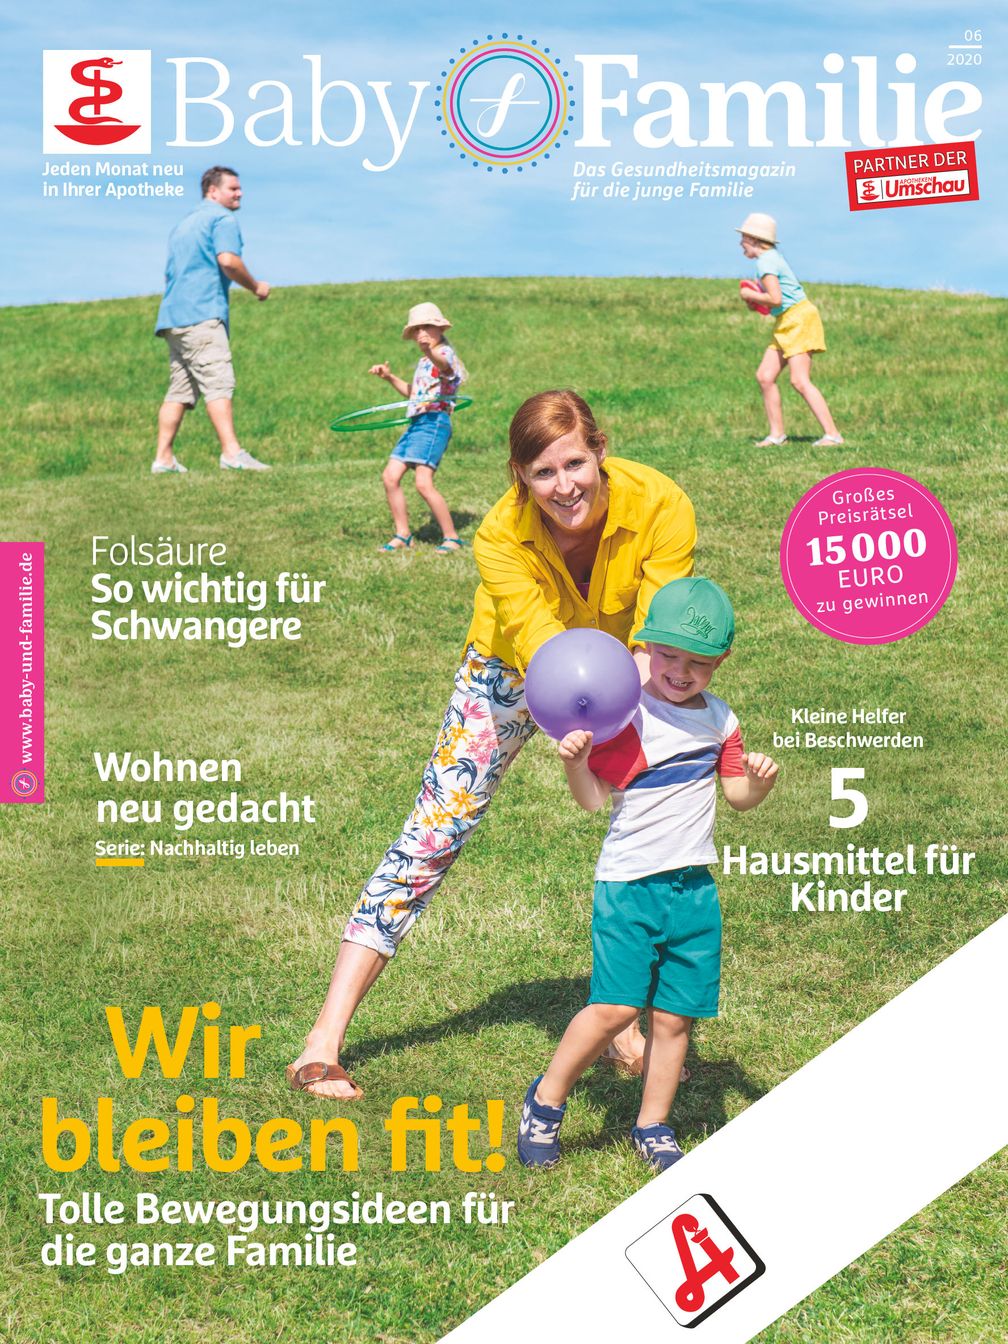 Baby und Familie-Titelcover, Ausgabe Juni 2020.  Bild: "obs/Wort & Bild Verlag - Gesundheitsmeldungen"